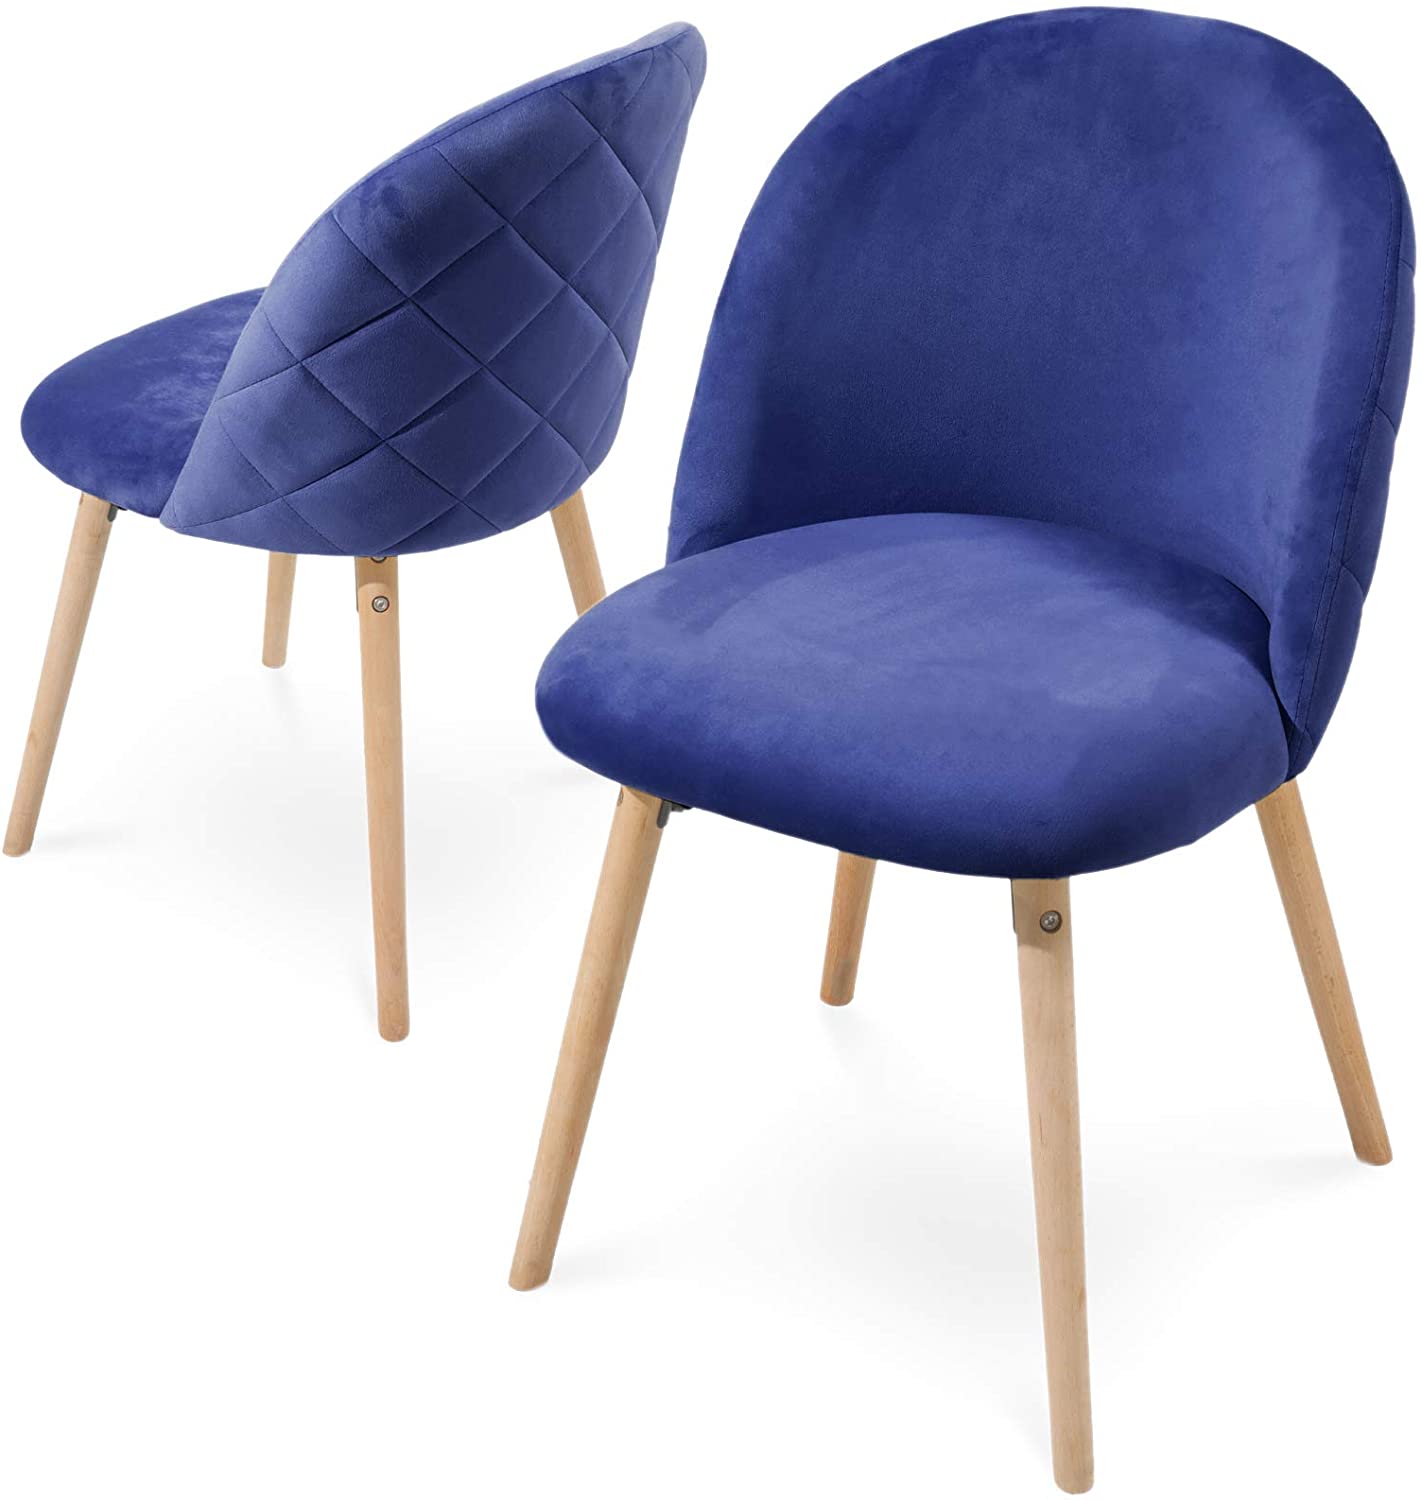 Eetkamerstoelen – Lounge stoelen – Scandinavisch – Retro – Vintage – Gestoffeerd – Set van 2 – Blauw